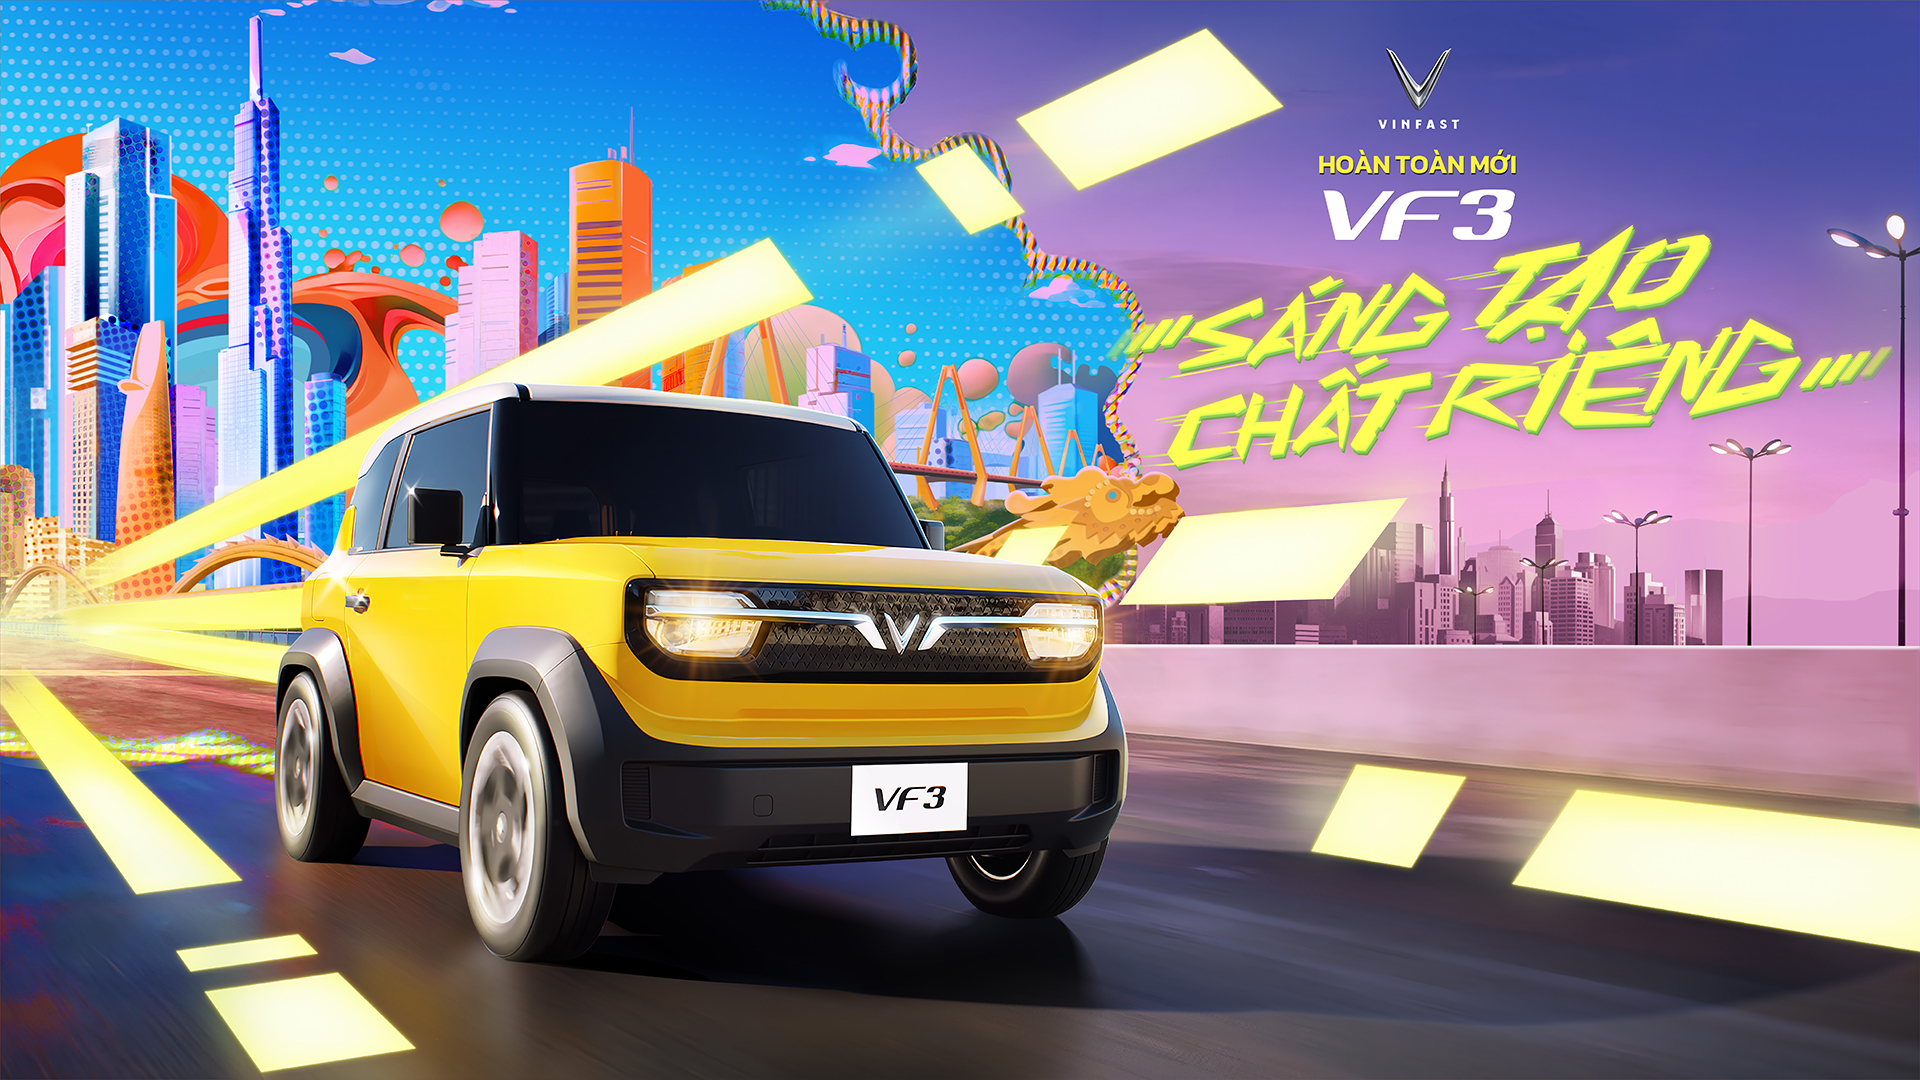 VinFast công bố nhận cọc VF 3 với giá đặc biệt chỉ từ 235 triệu đồng- Ảnh 2.